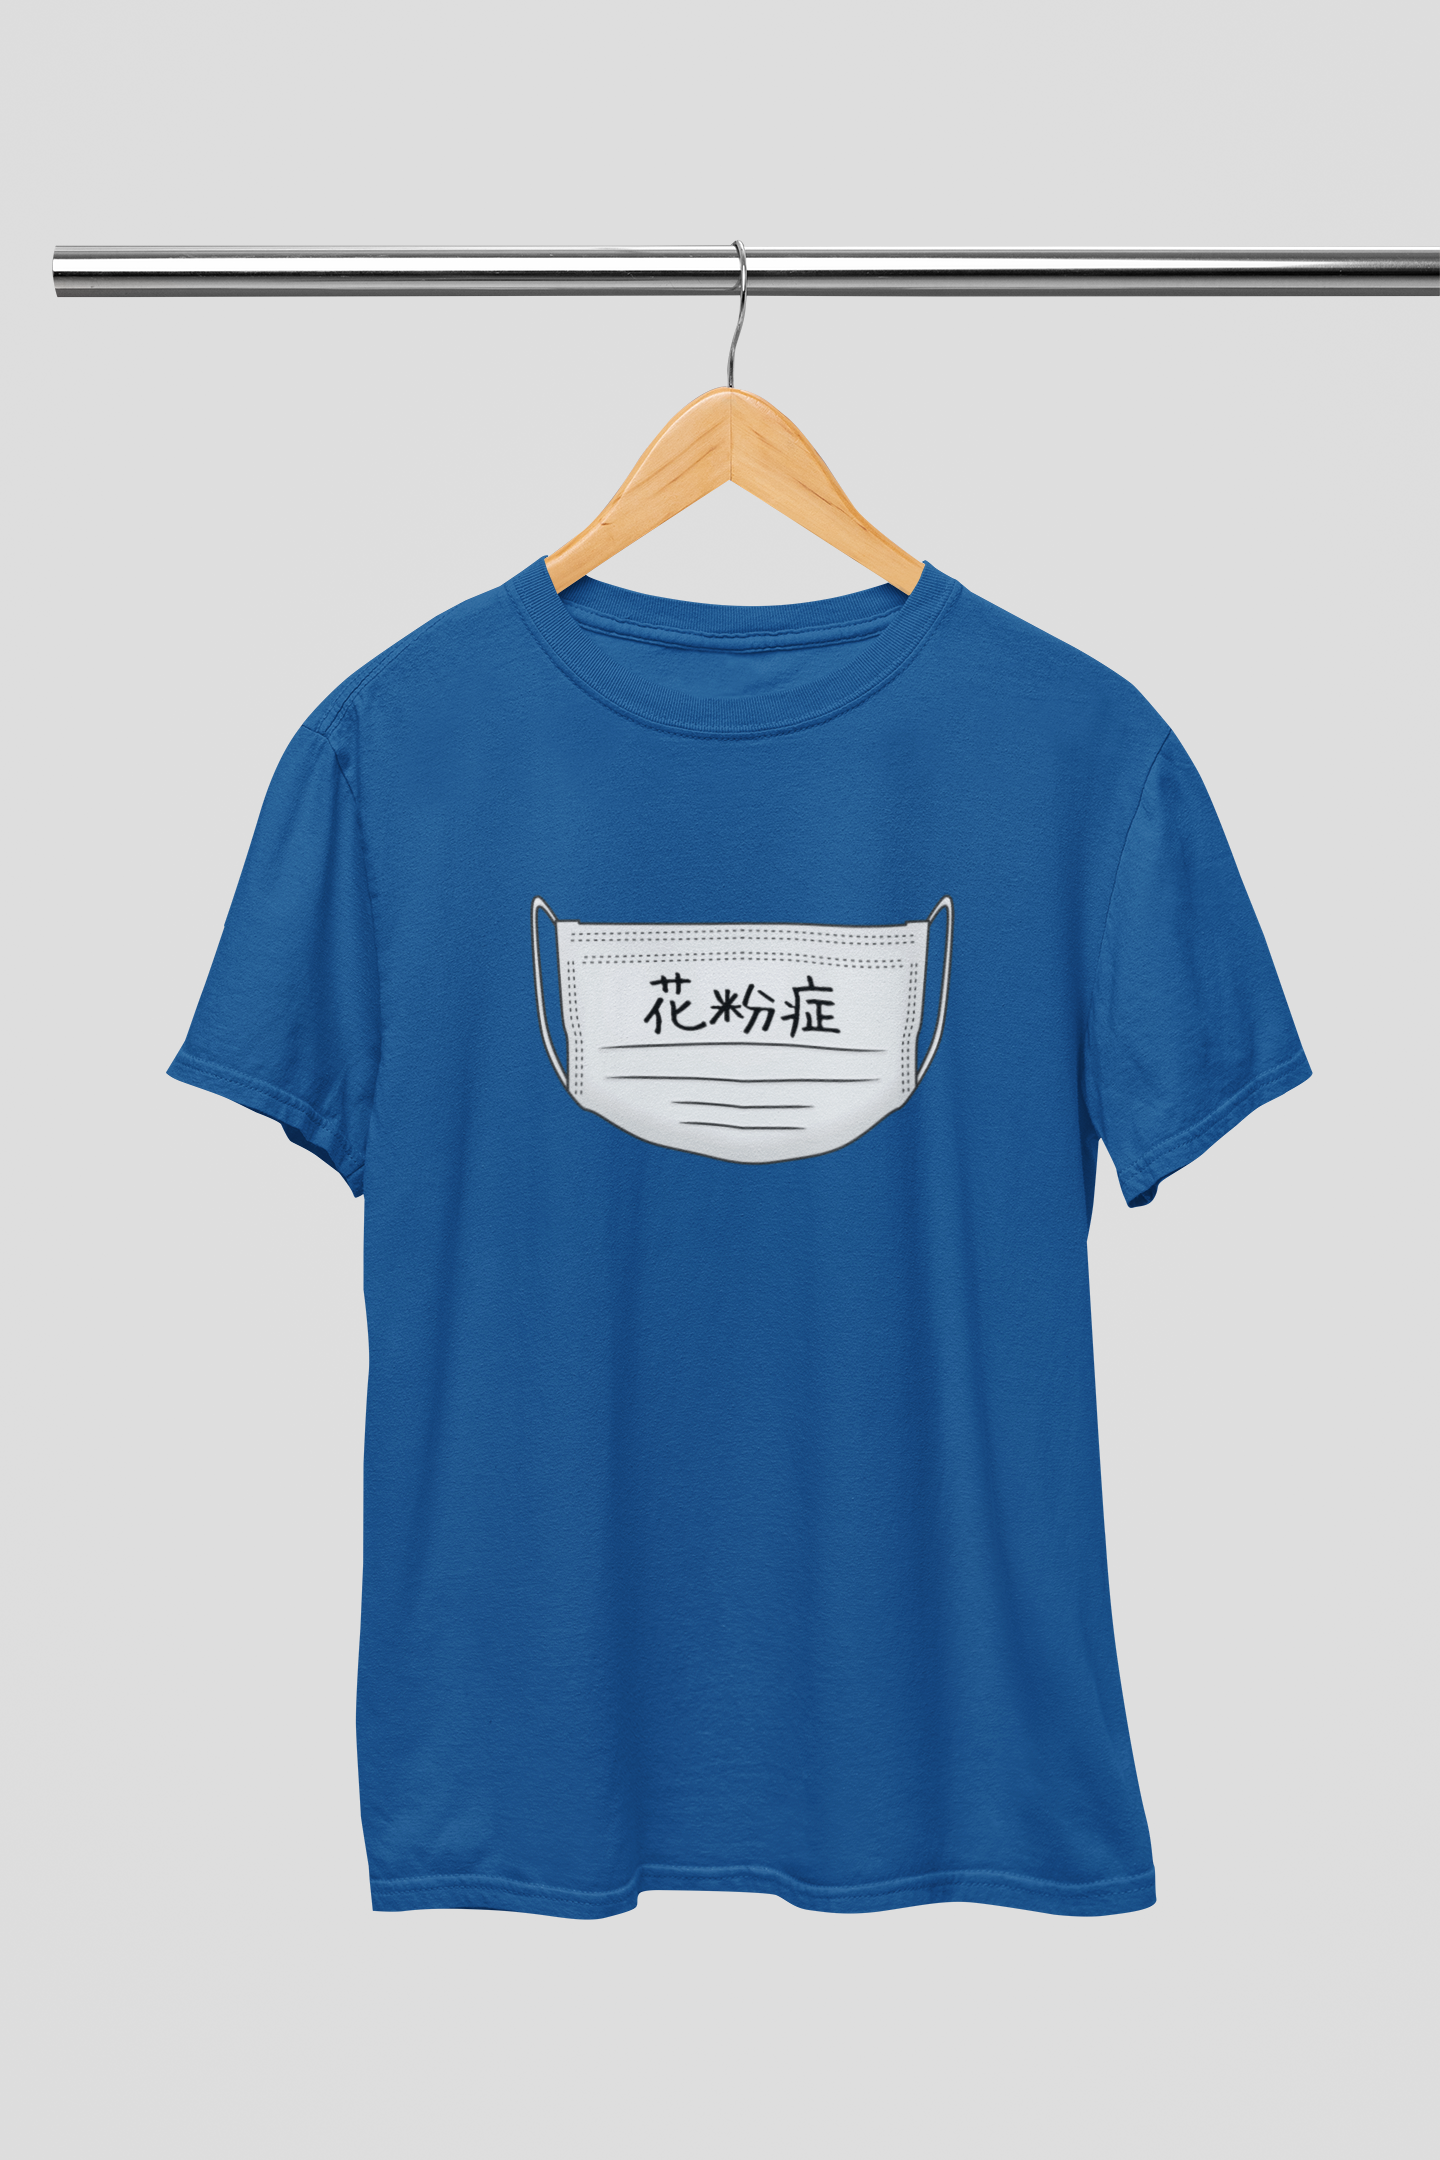 "Hay Fever" - Japanese Kanji T-shirt - YUME